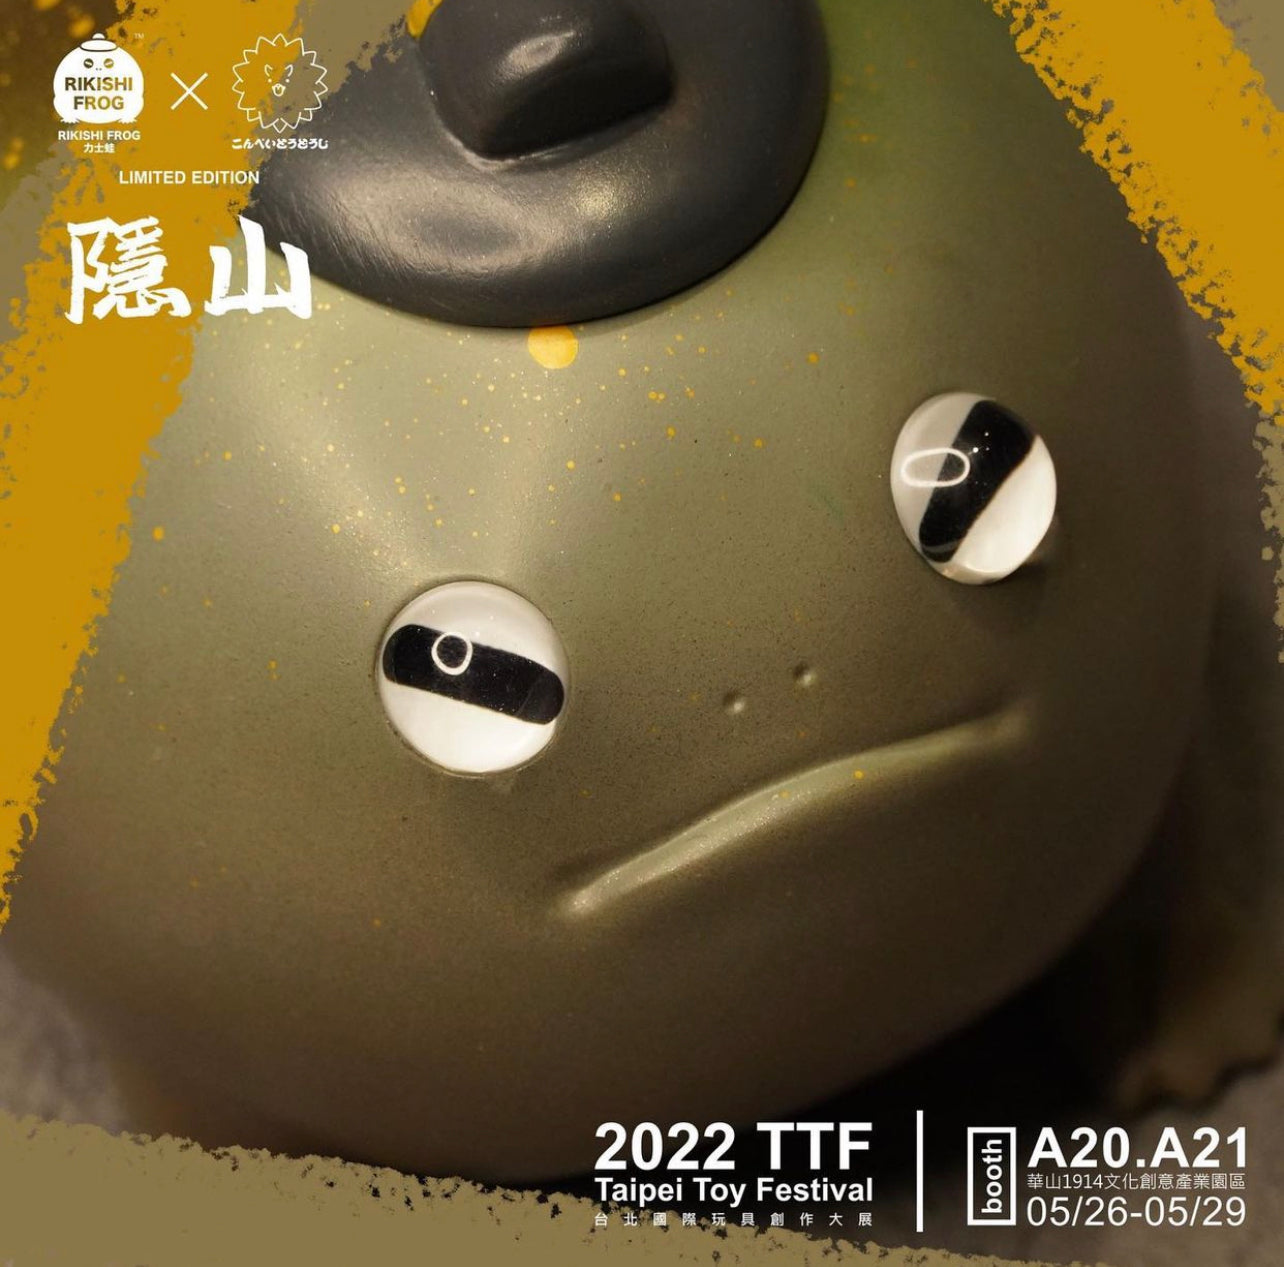 Rikishi Frog TTF 2022 Exclusive